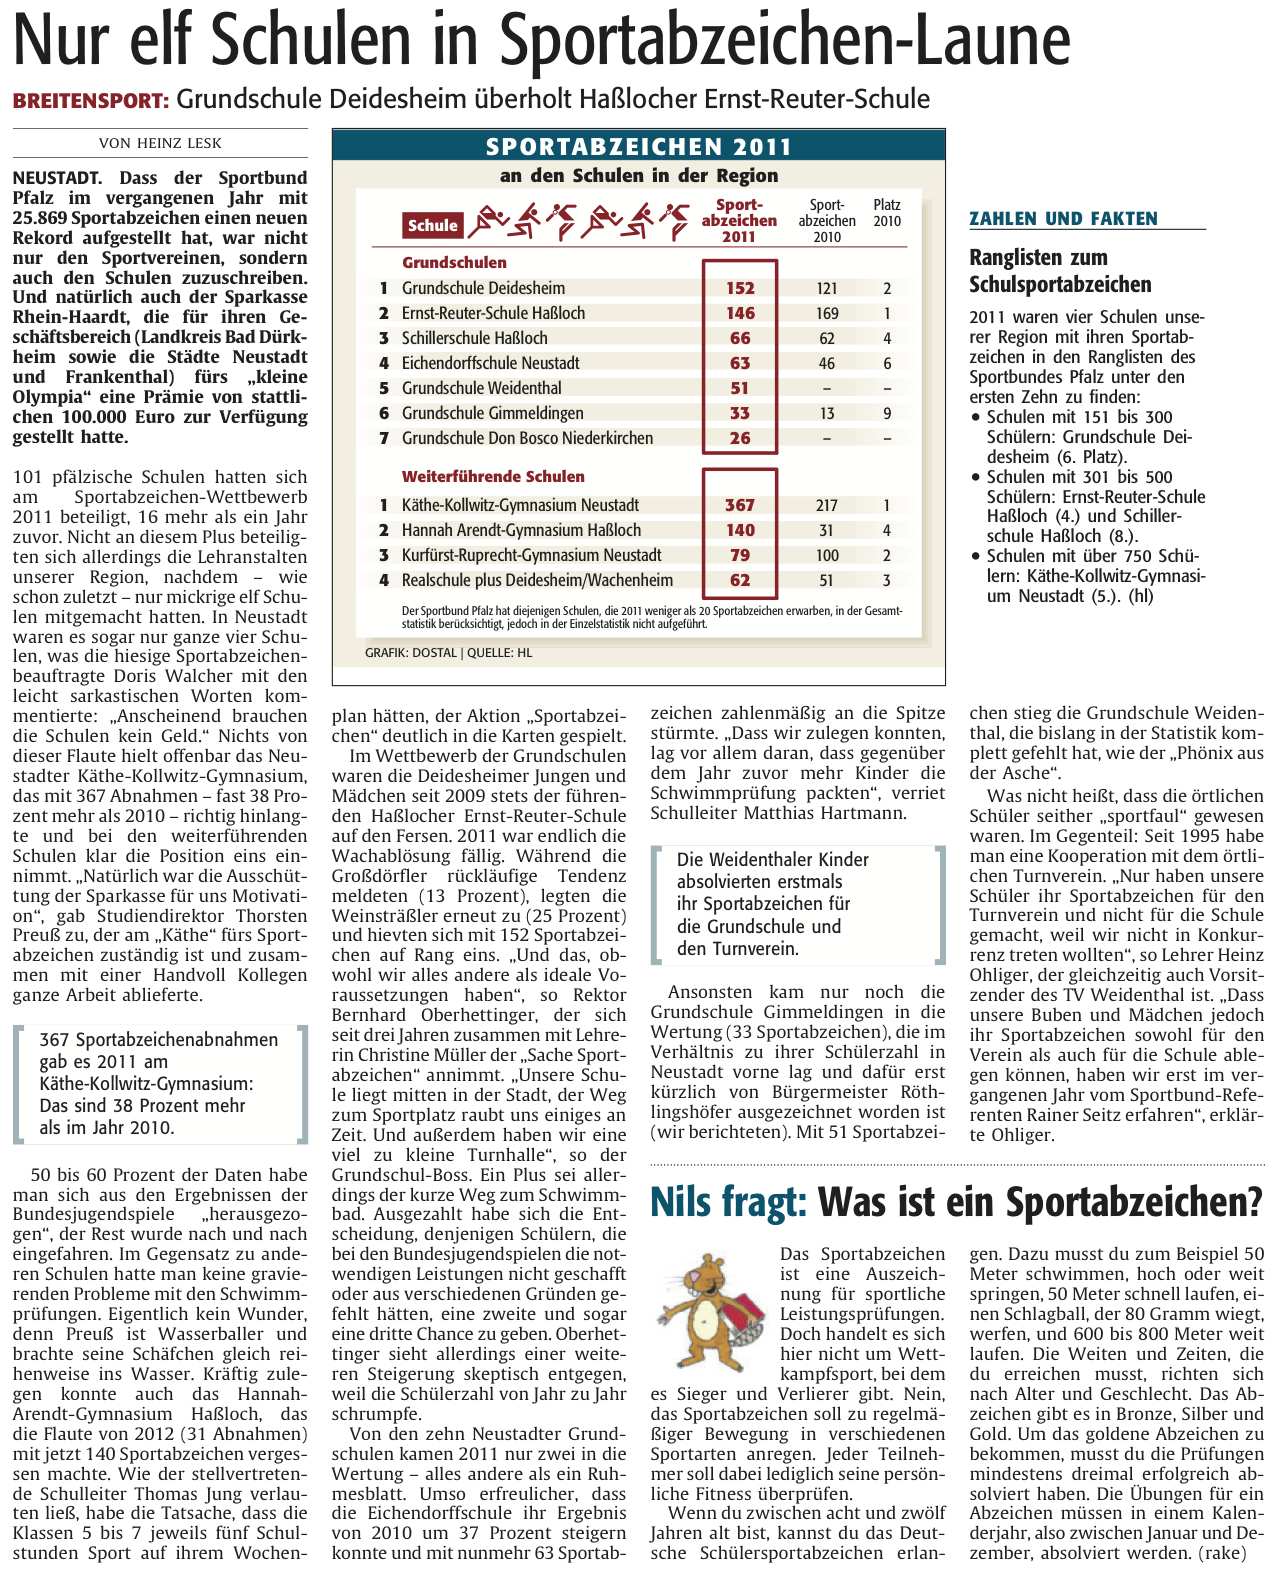 2012-07-07-Nur11SchuleninSportabzeichen-Laune